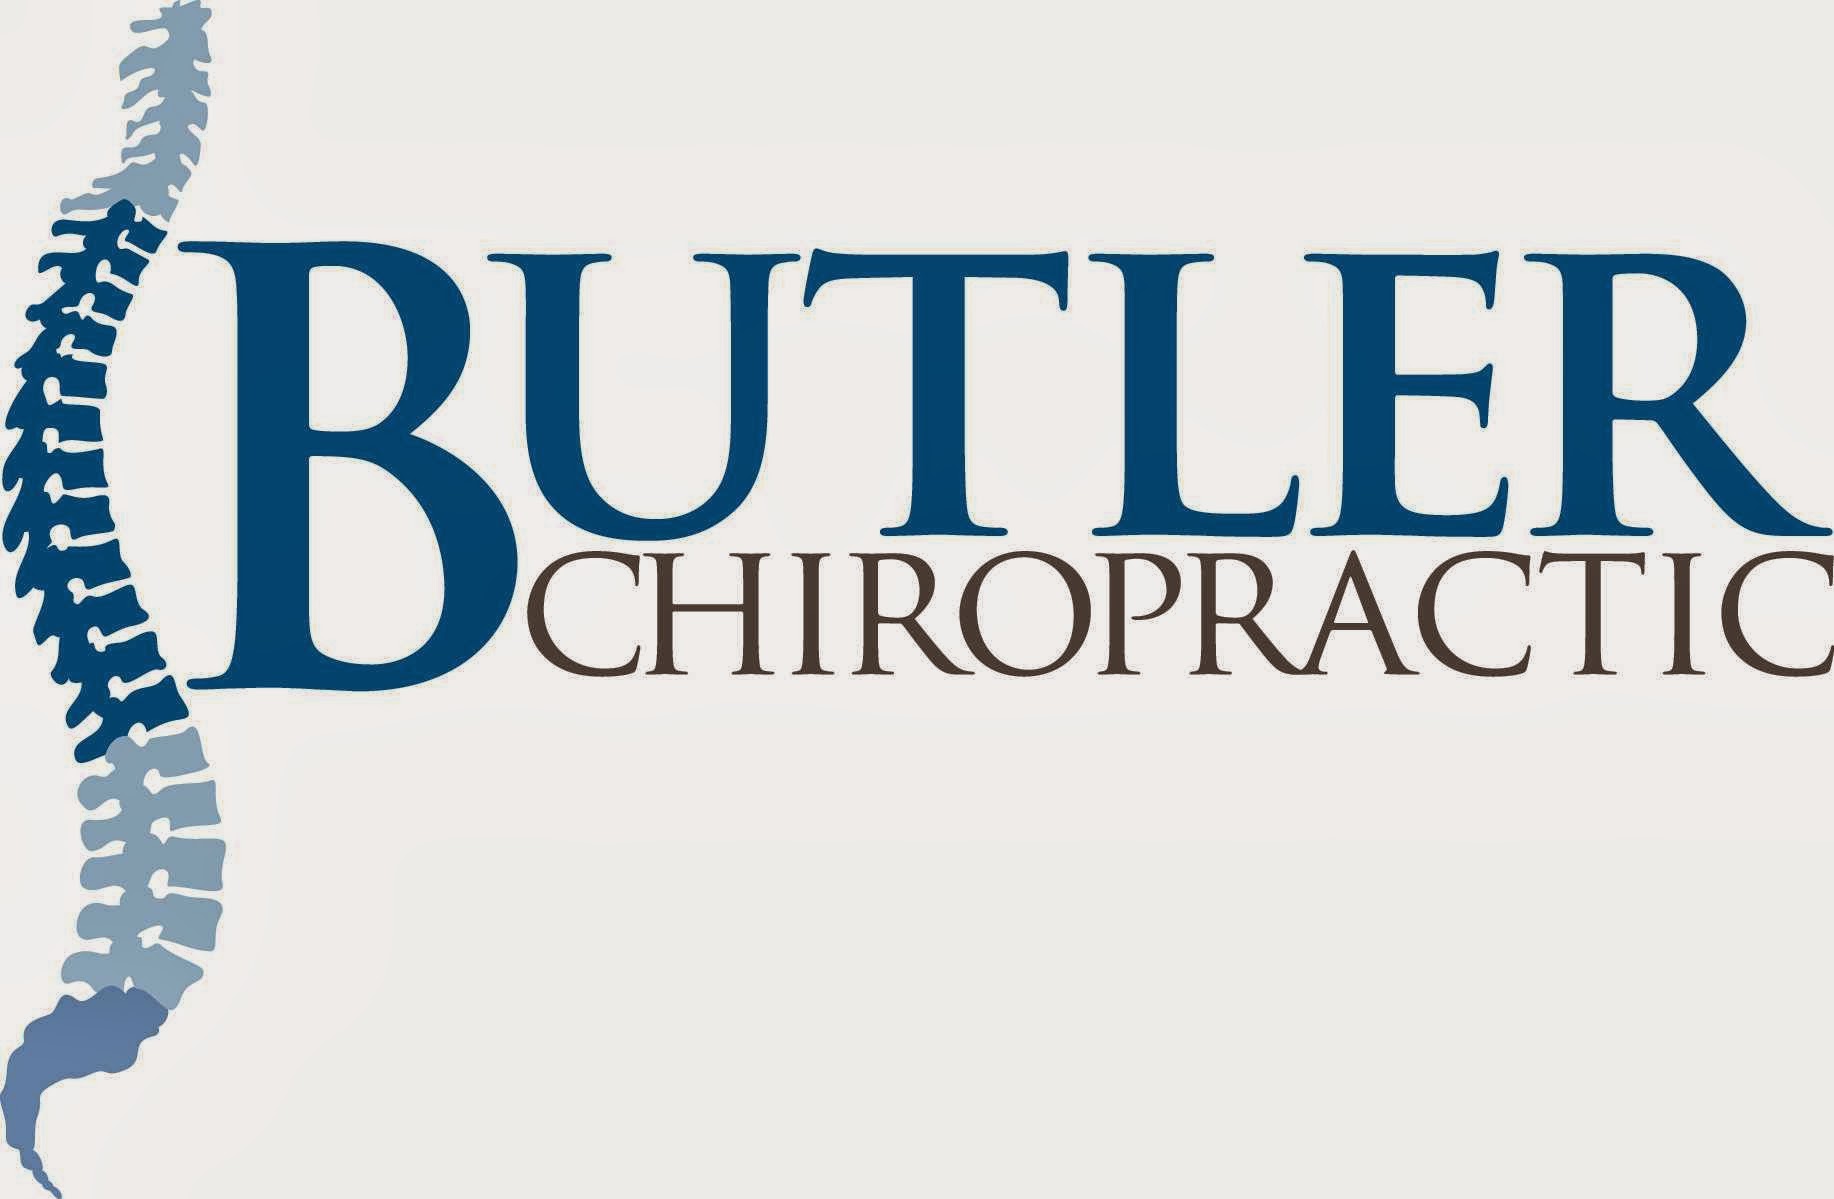 Butler Chiropractic